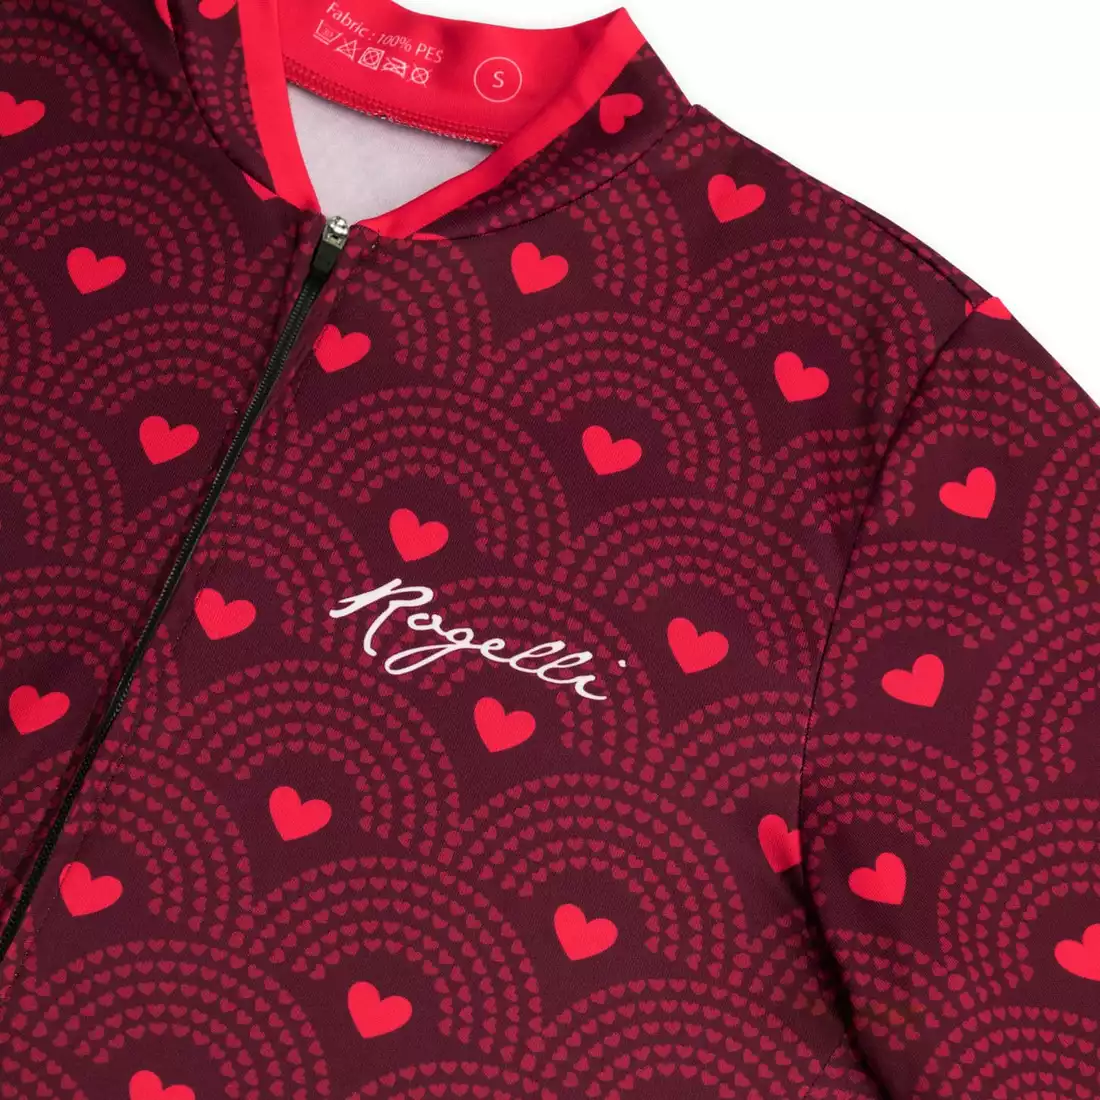 Rogelli HEARTS dámský cyklistický dres, kaštanově růžová